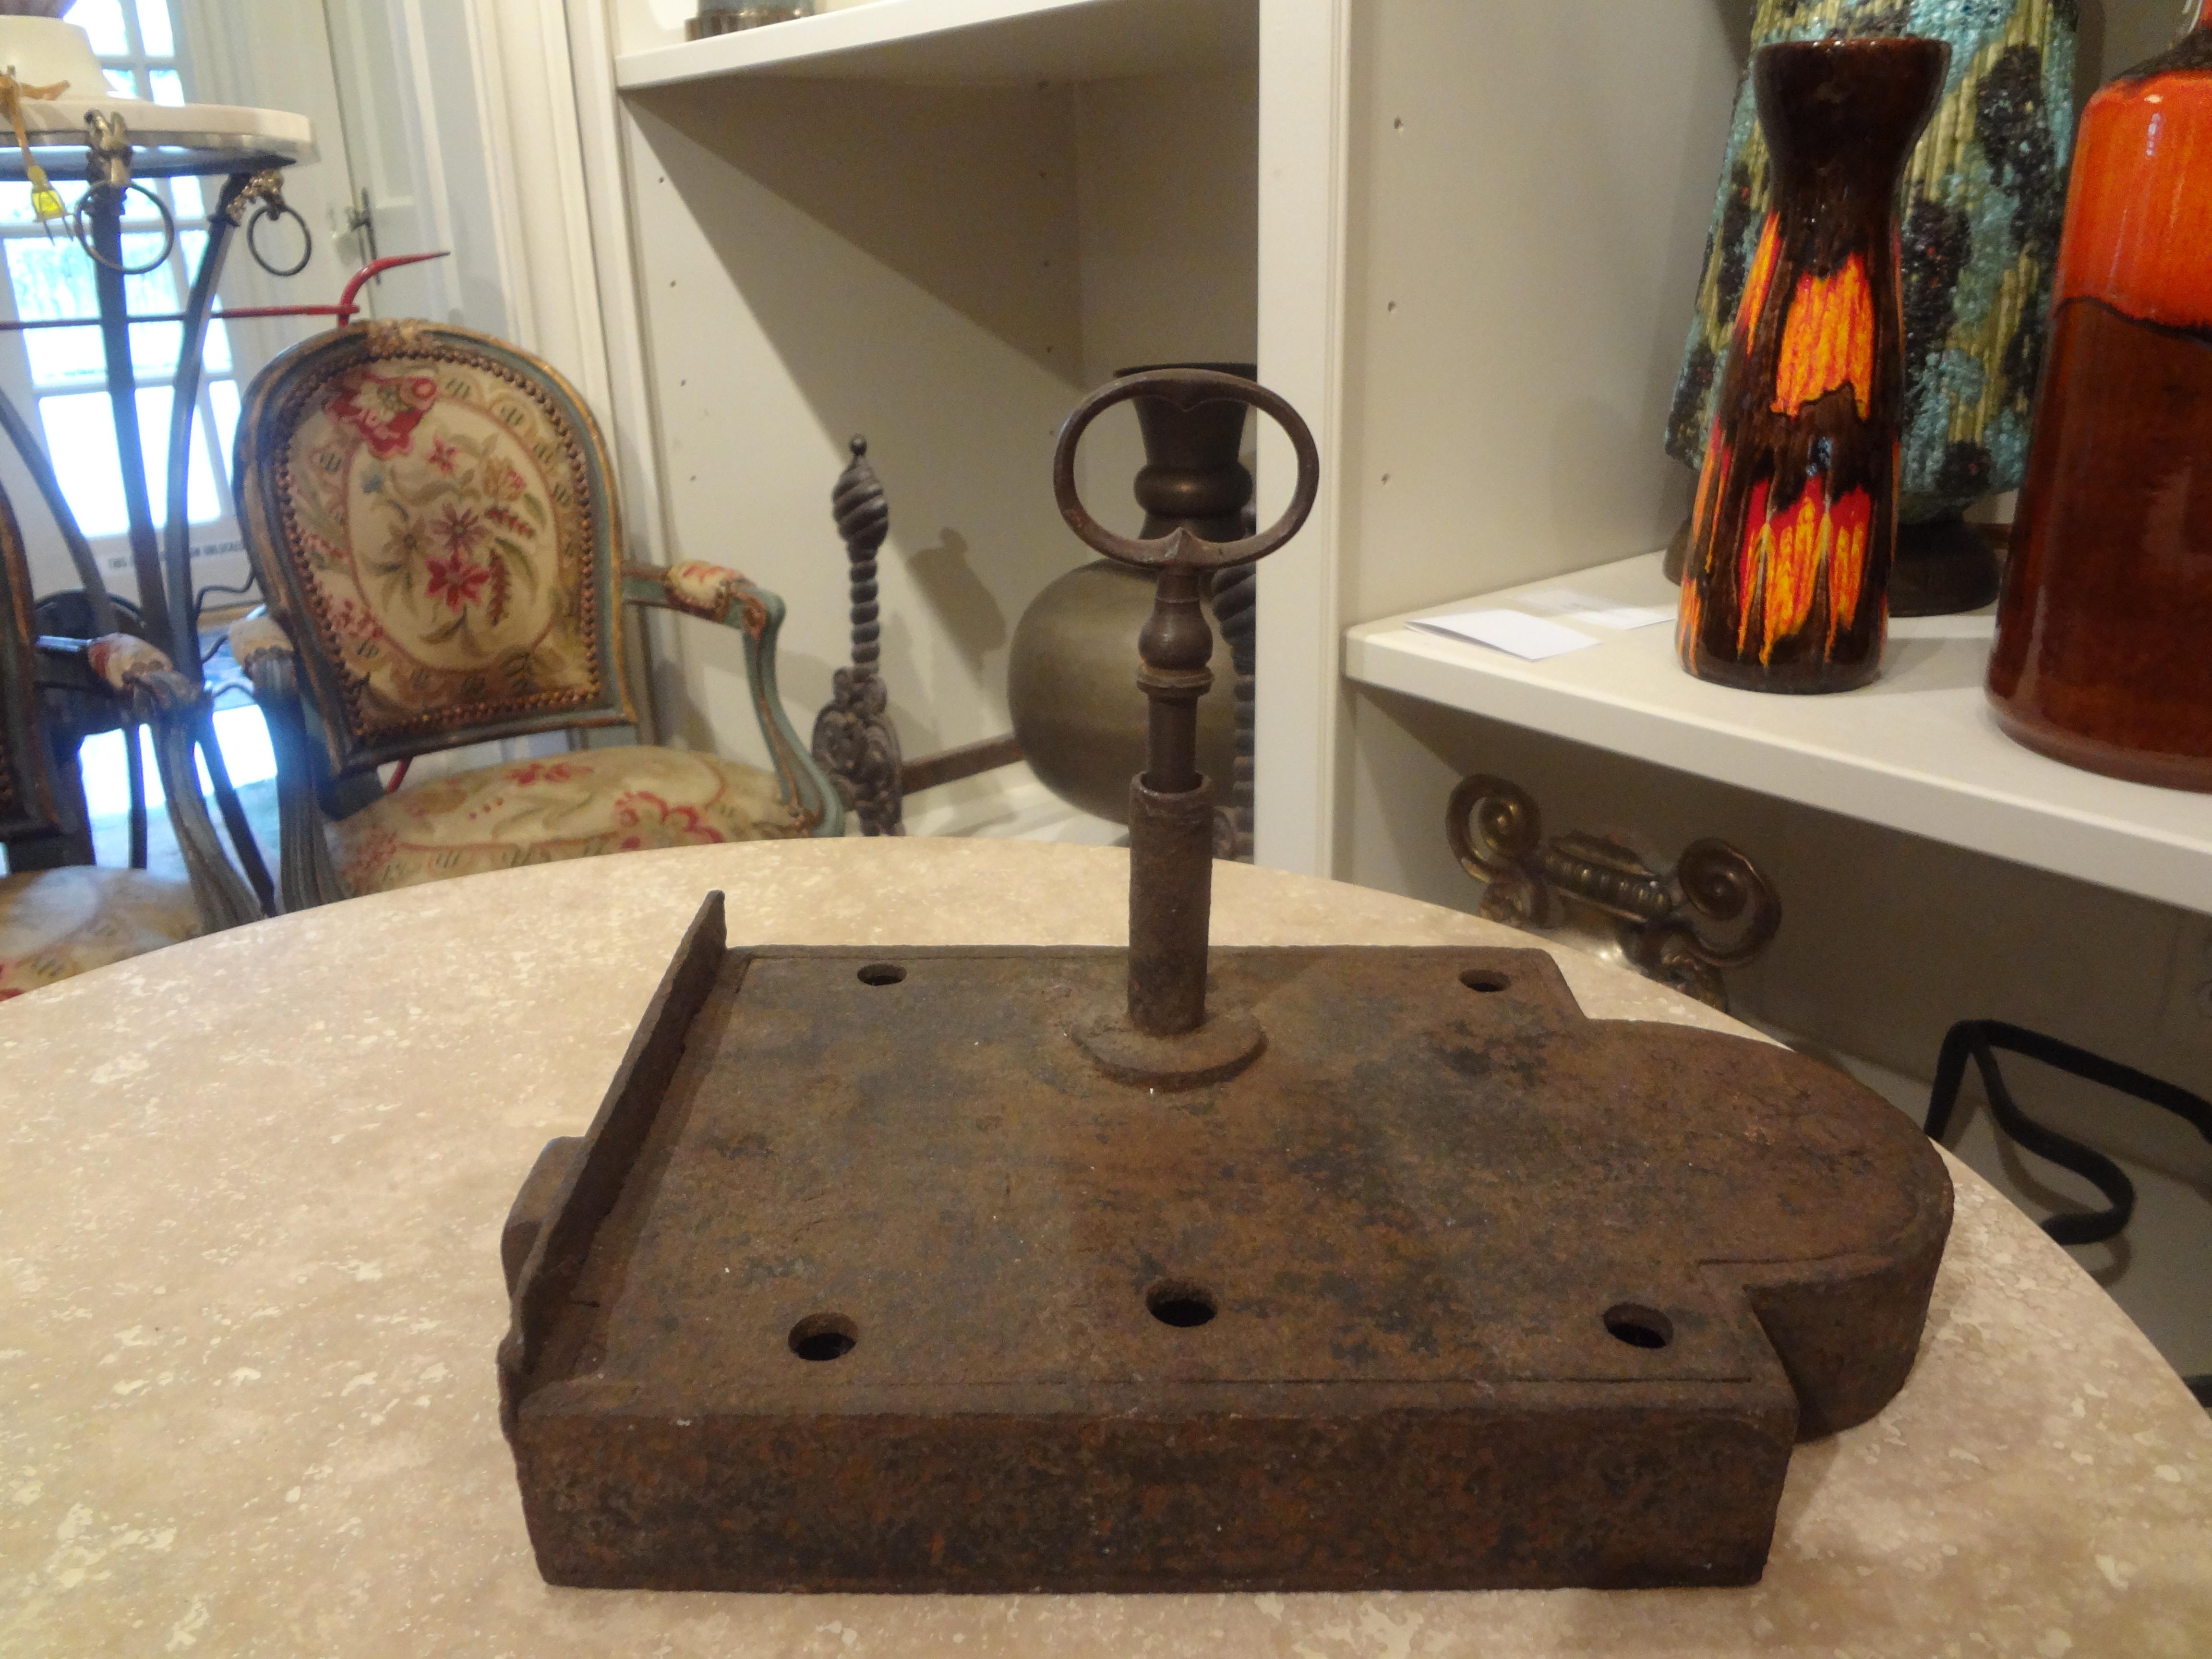 Grande serrure et clé en fer française du 18e siècle. Cette belle serrure en fer français est livrée avec sa clé d'origine et constitue un accessoire intéressant pour une table basse ou un presse-papier.